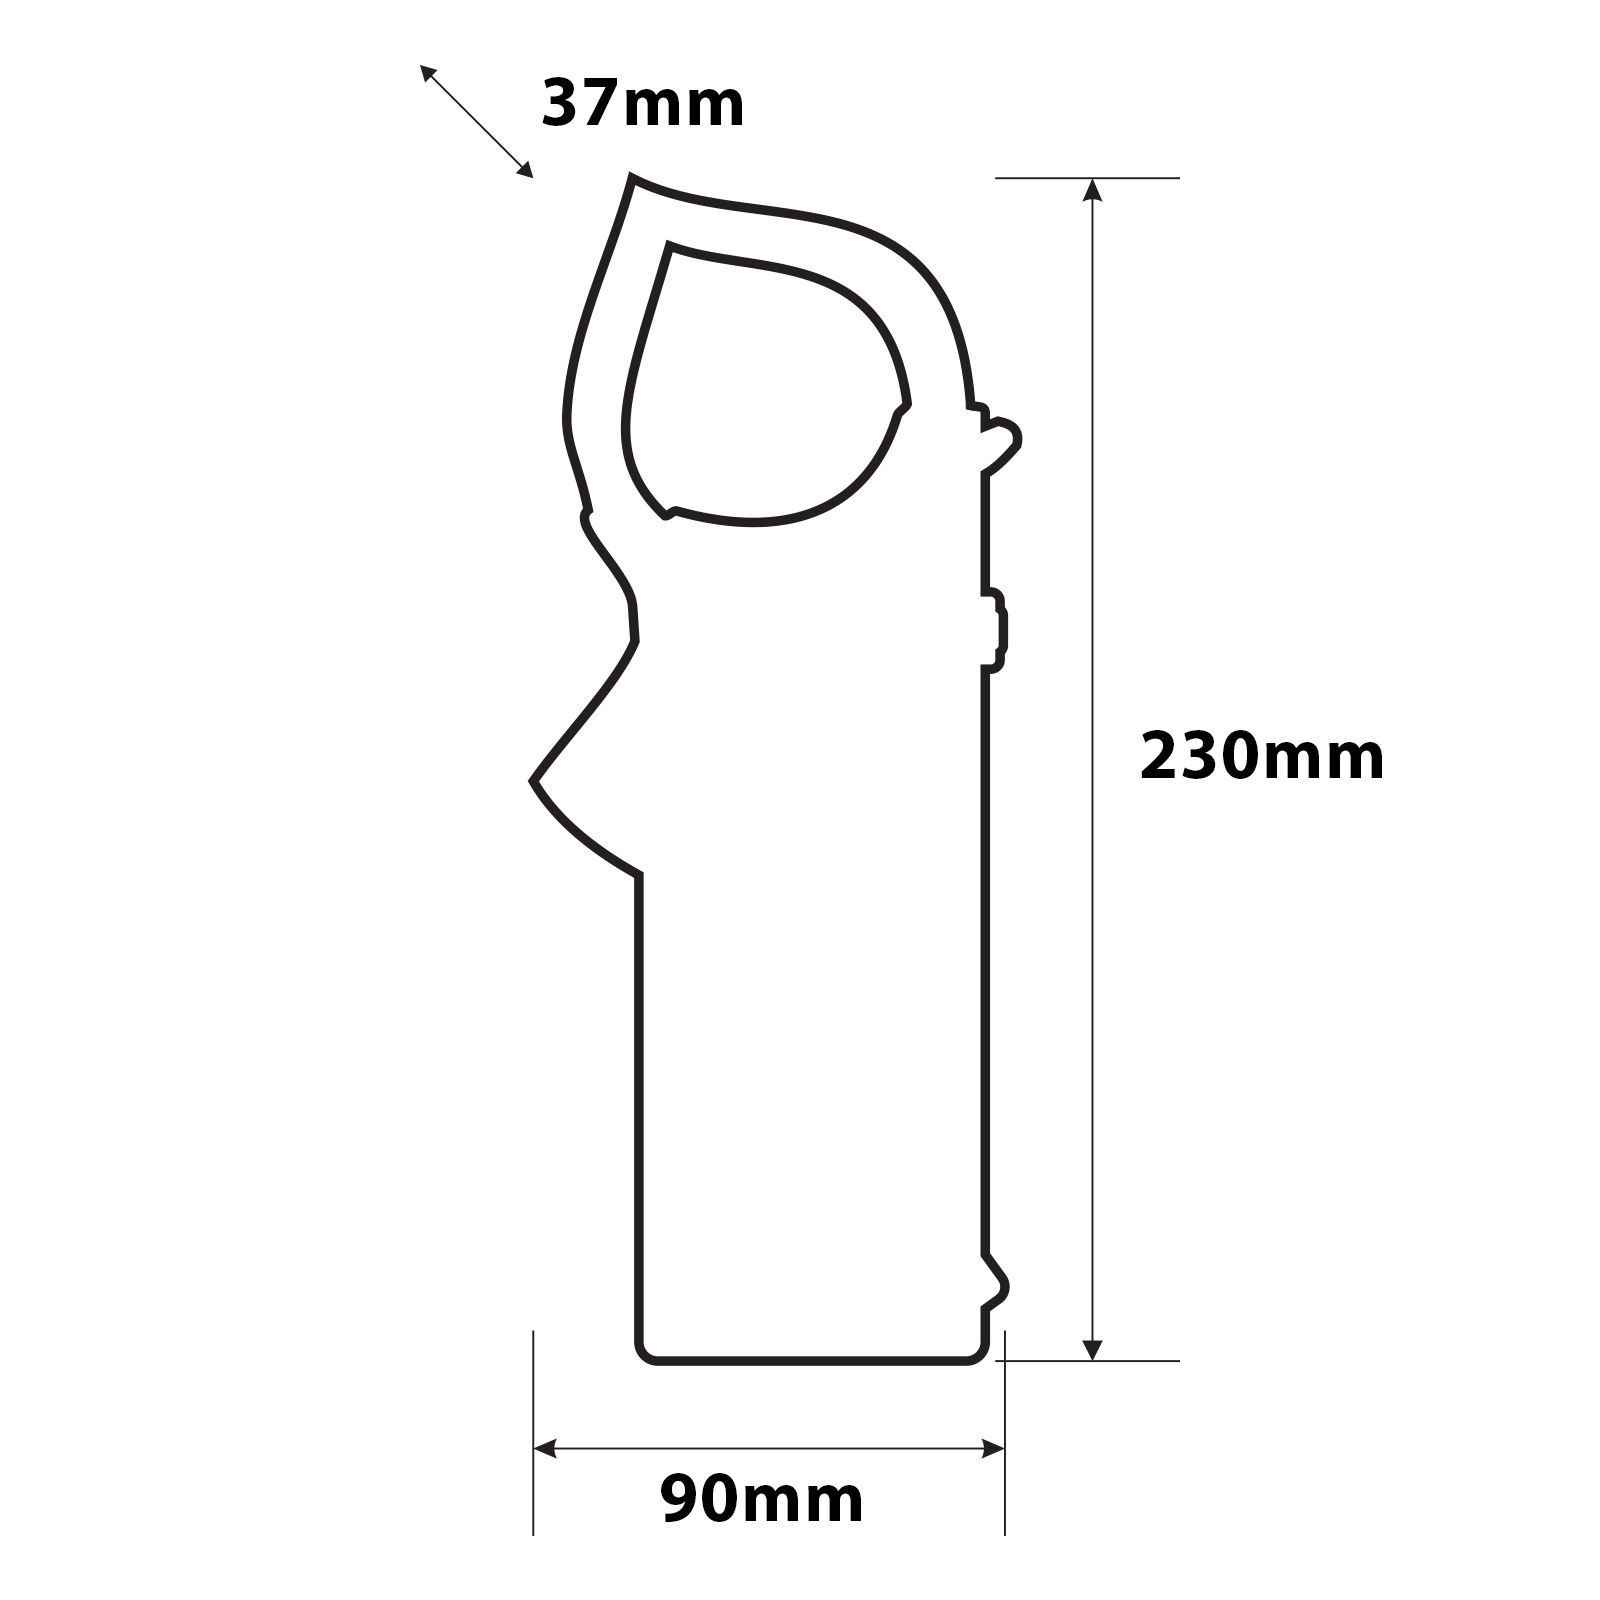 Digital clamp meter thumb